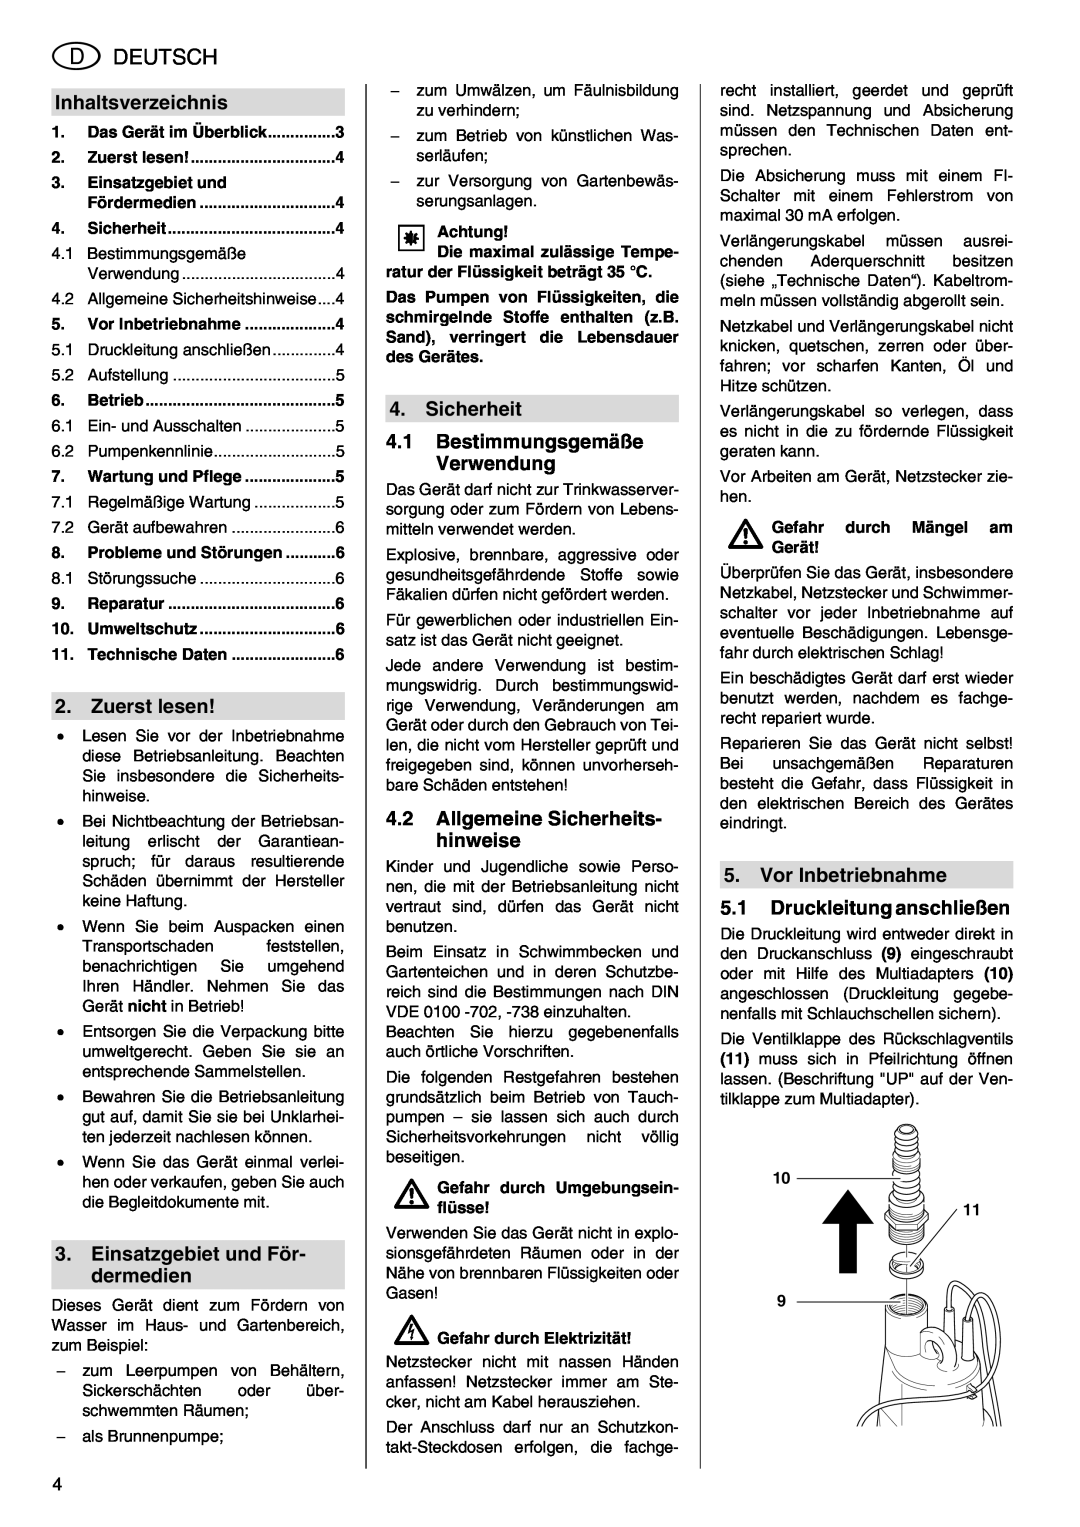 Metabo TDP 7500 S manual Deutsch, Inhaltsverzeichnis, Zuerst lesen, Einsatzgebiet und För- dermedien 